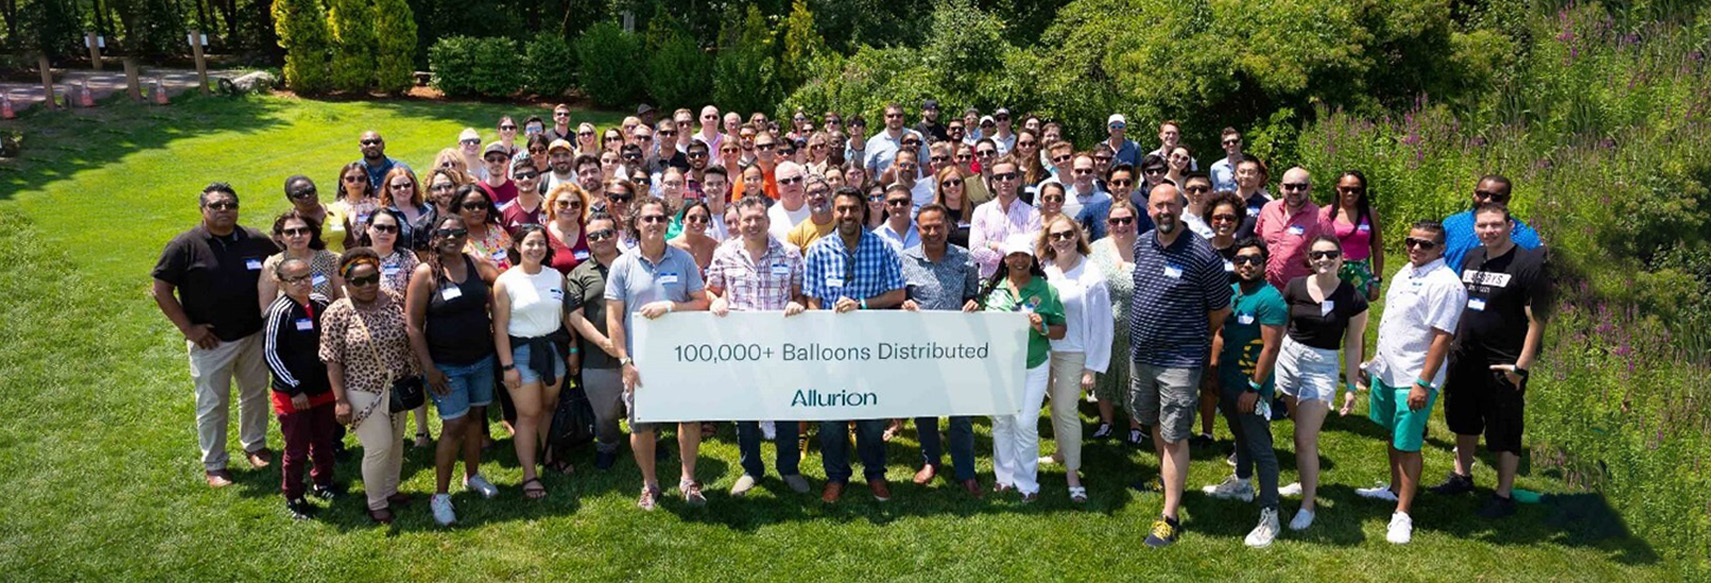 100K Balloon Team resize